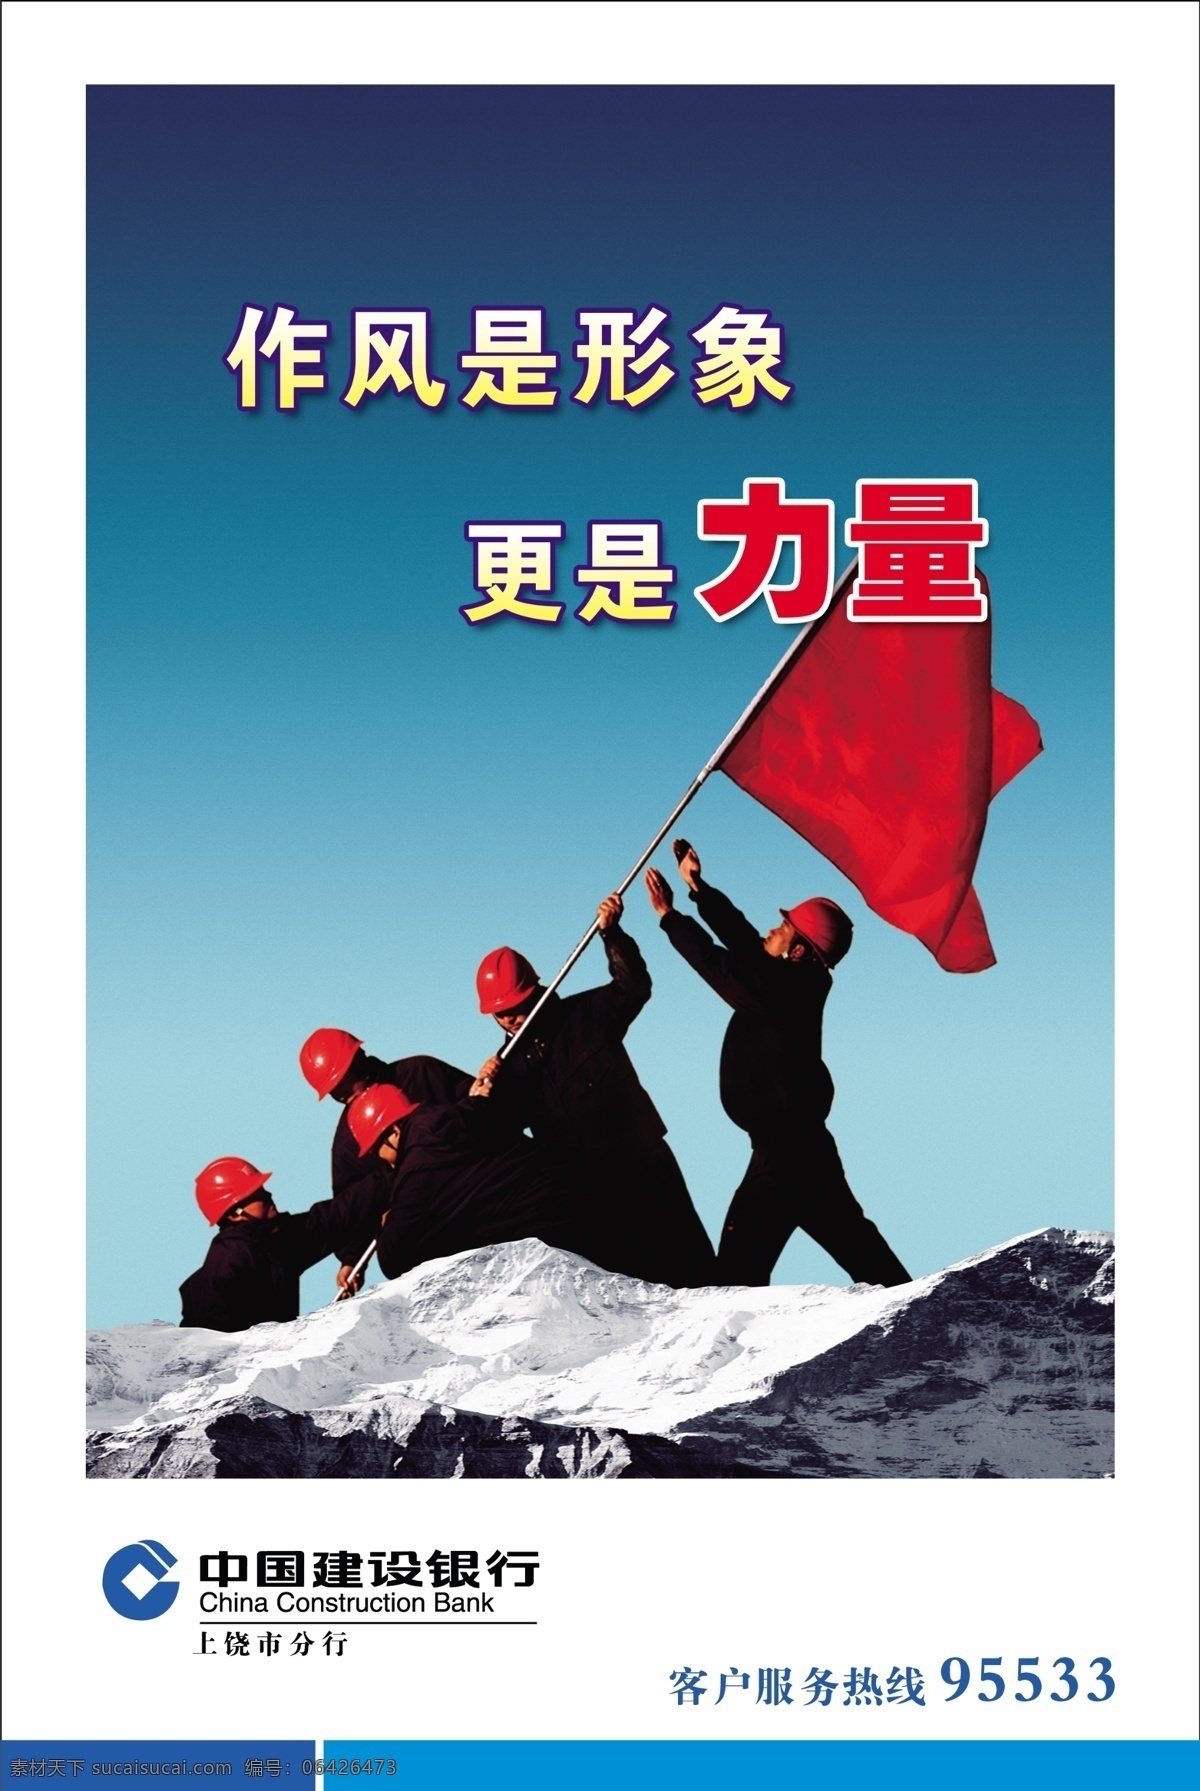 企业形象 中国建设银行 作风 力量 攀山 广告设计模板 源文件